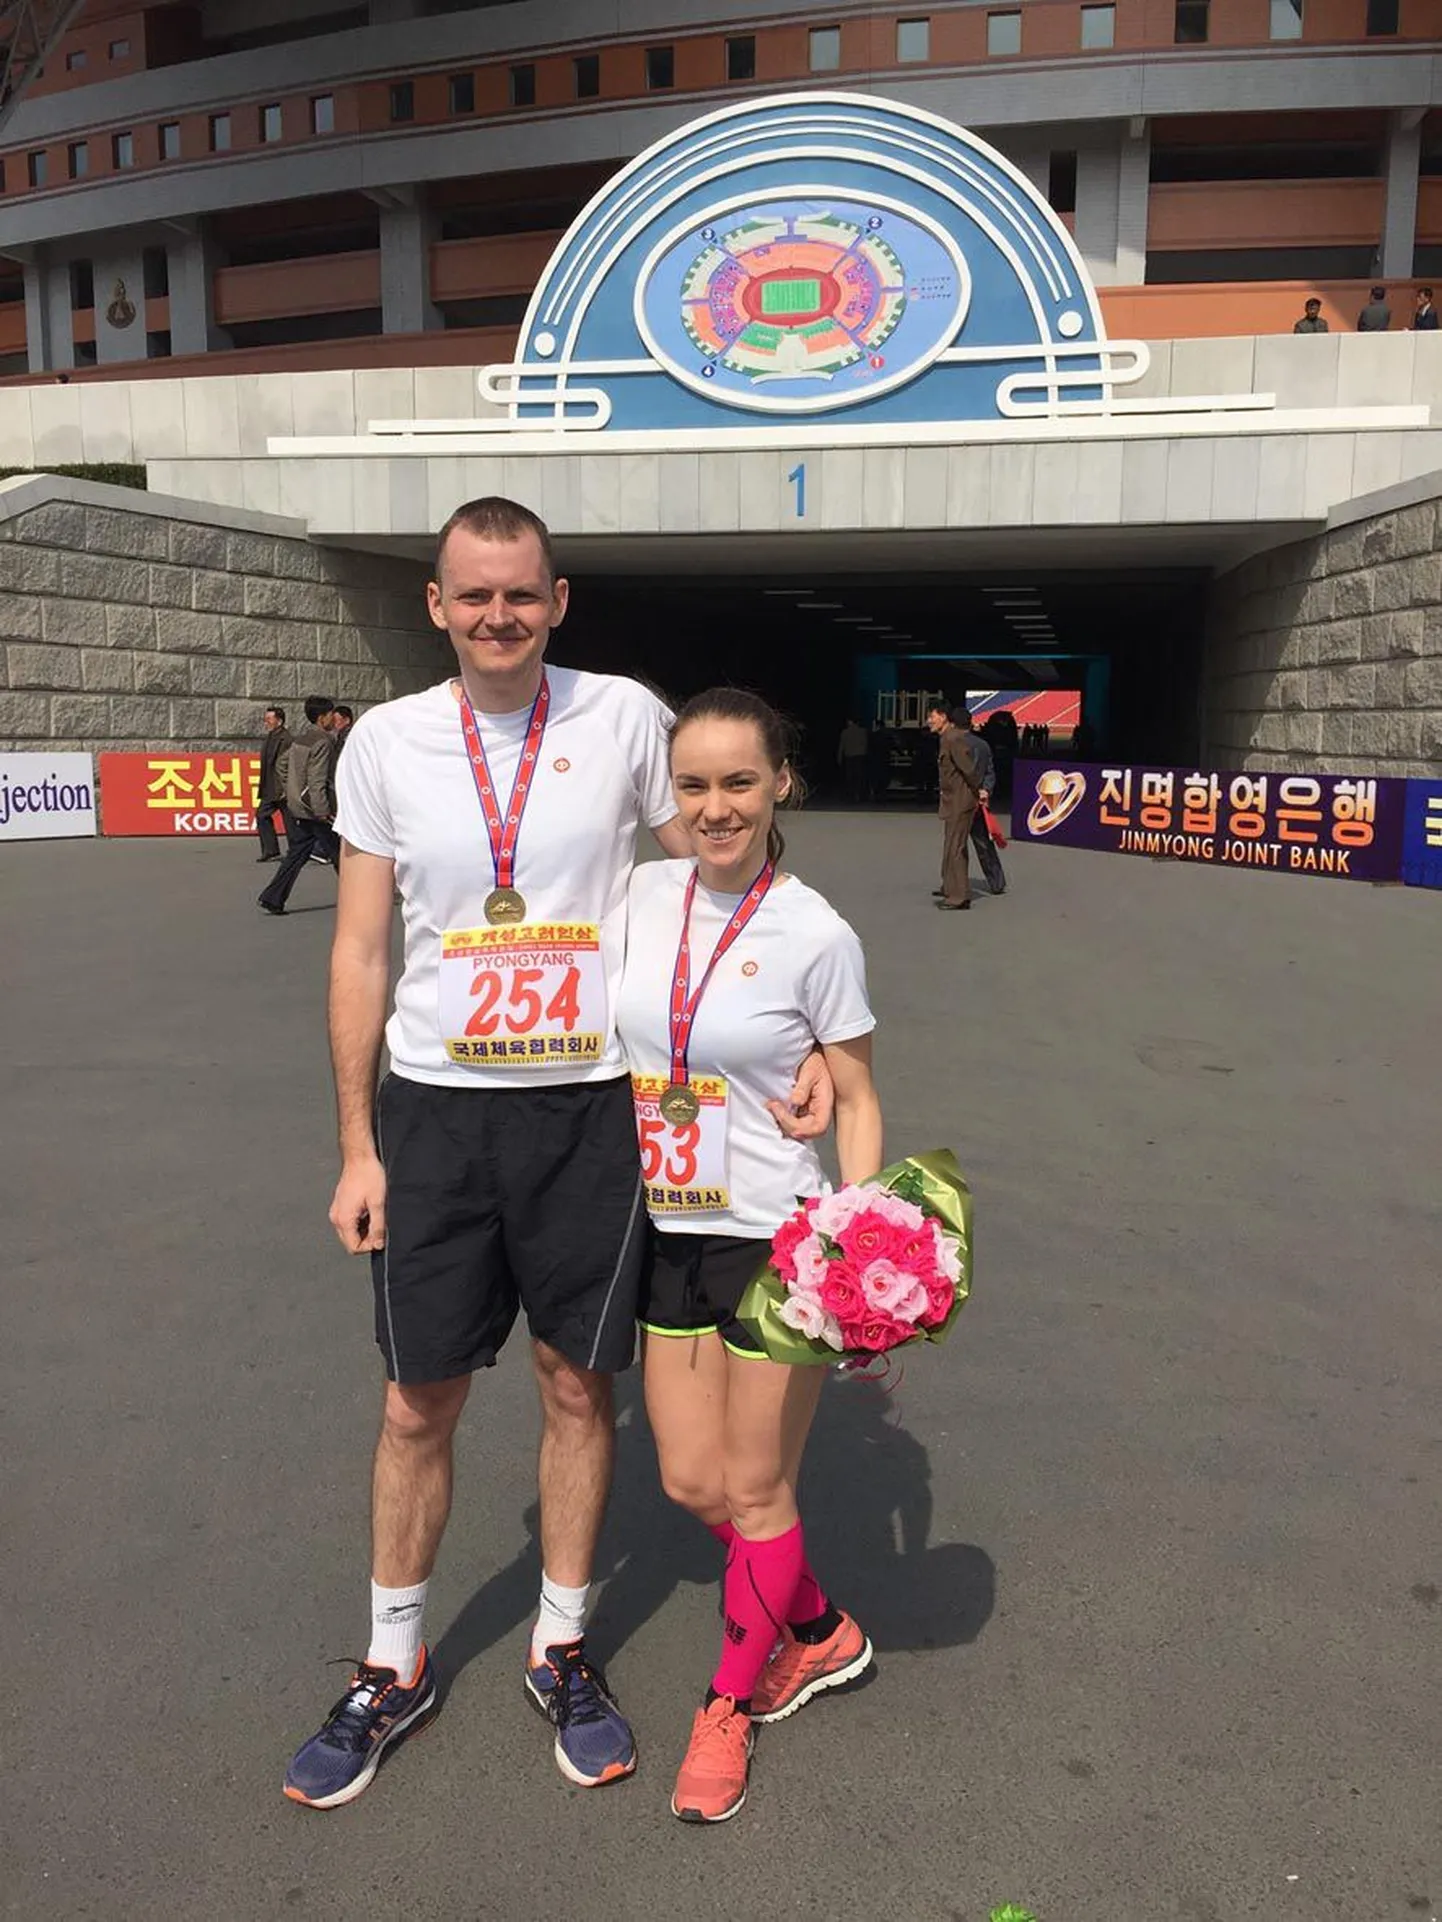 Türilt pärit Jekaterina Stepanova ja Rasmus Raamat jooksid aprilli alguses  maratoni Põhja-Koreas. Üht maratoni nad kaks korda joosta väga ei viitsiks, kuid sinna kummalisse diktatuuririiki kipuvad mõlemad küll veel tagasi.